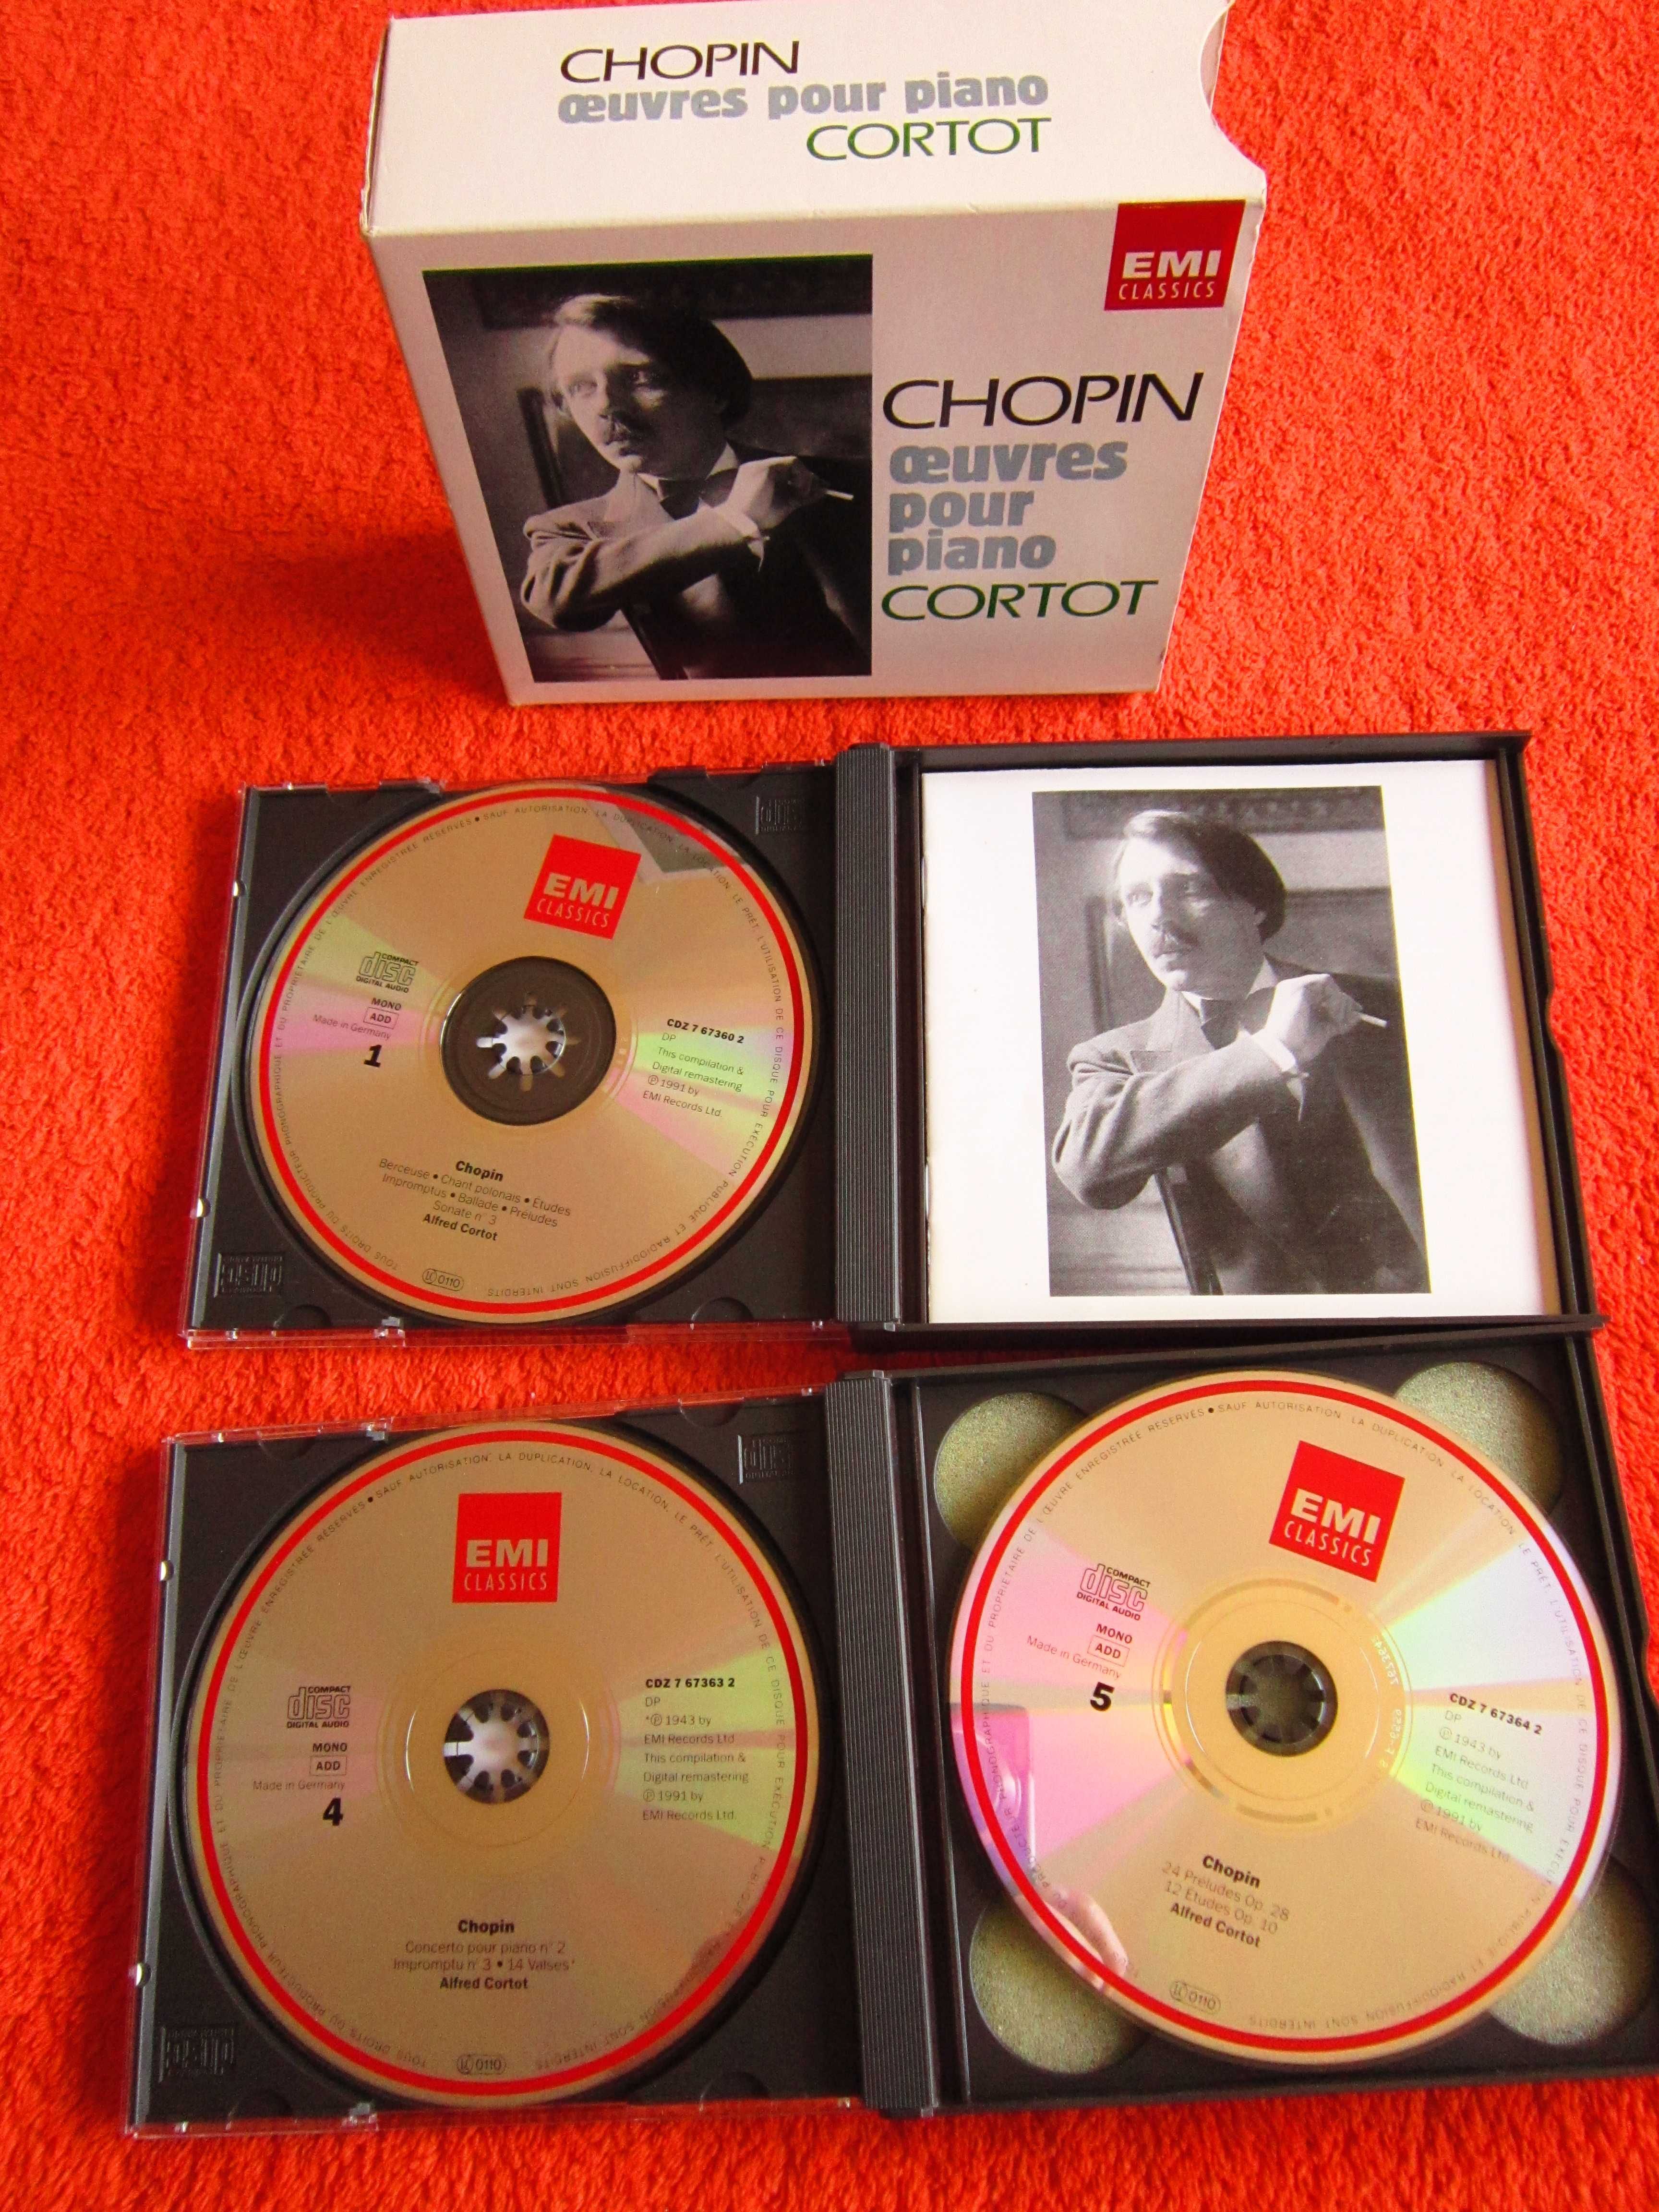 cadou rar Chopin Lucrari pentru pian -A.Cortot 6 CD made Germany 1991